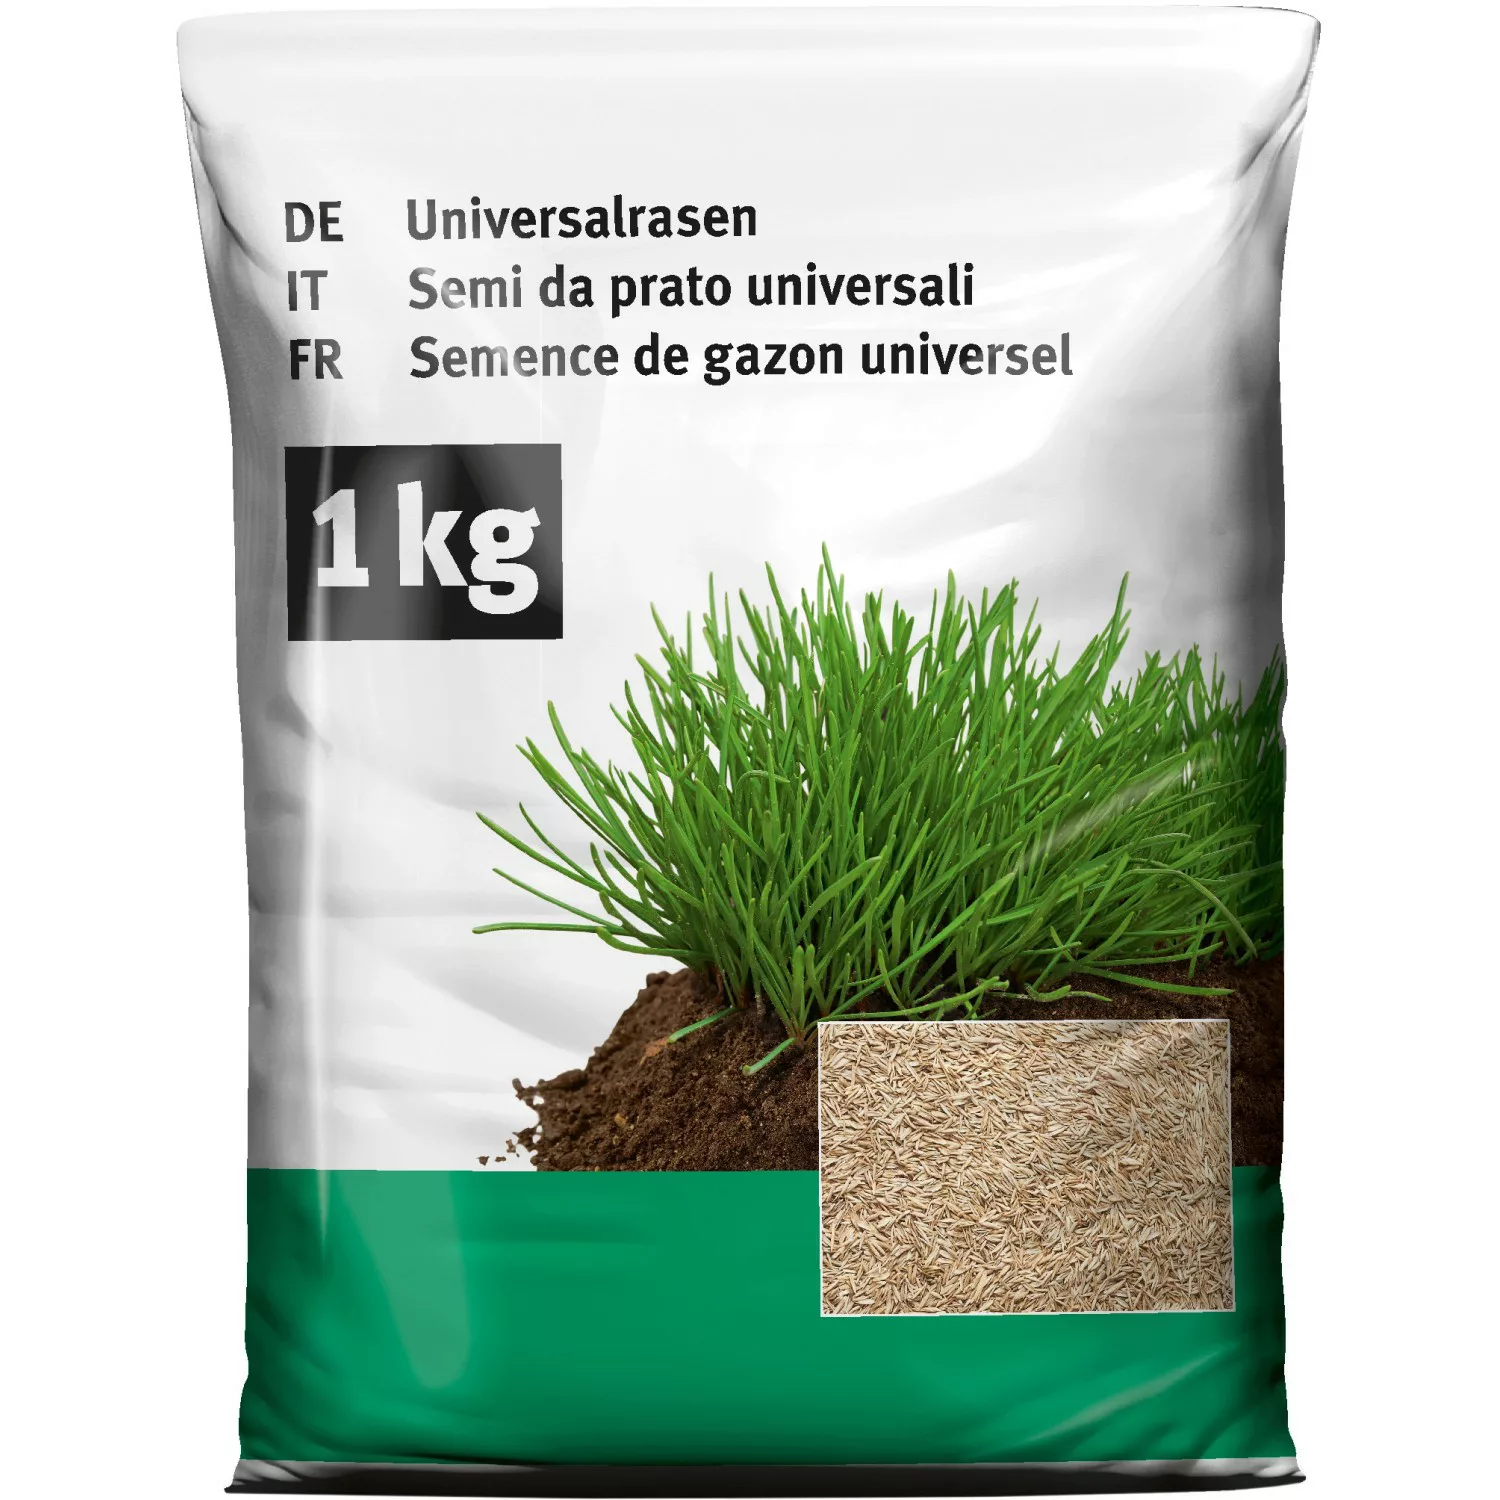 Universal Rasen 1 kg günstig online kaufen